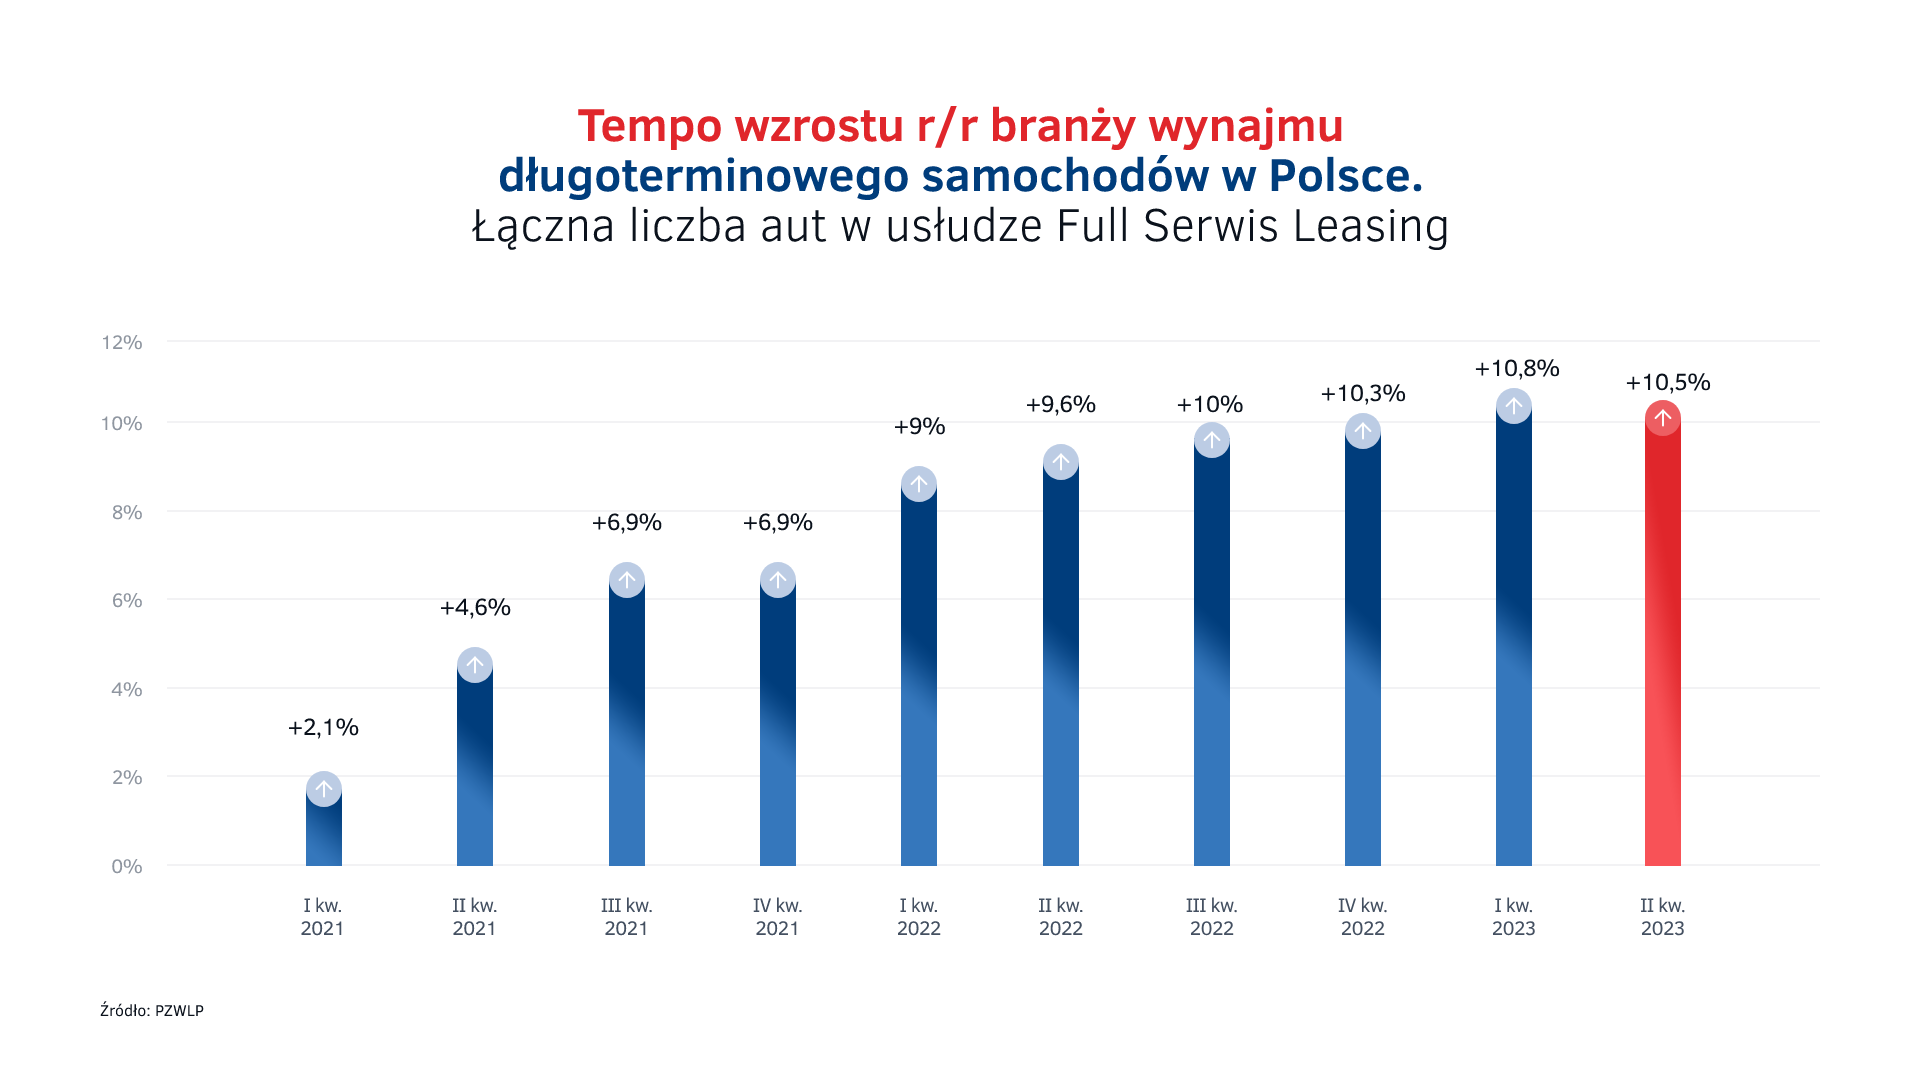 Tempo wzrostu rynku wynajmu długoterminowego aut w Polsce.png